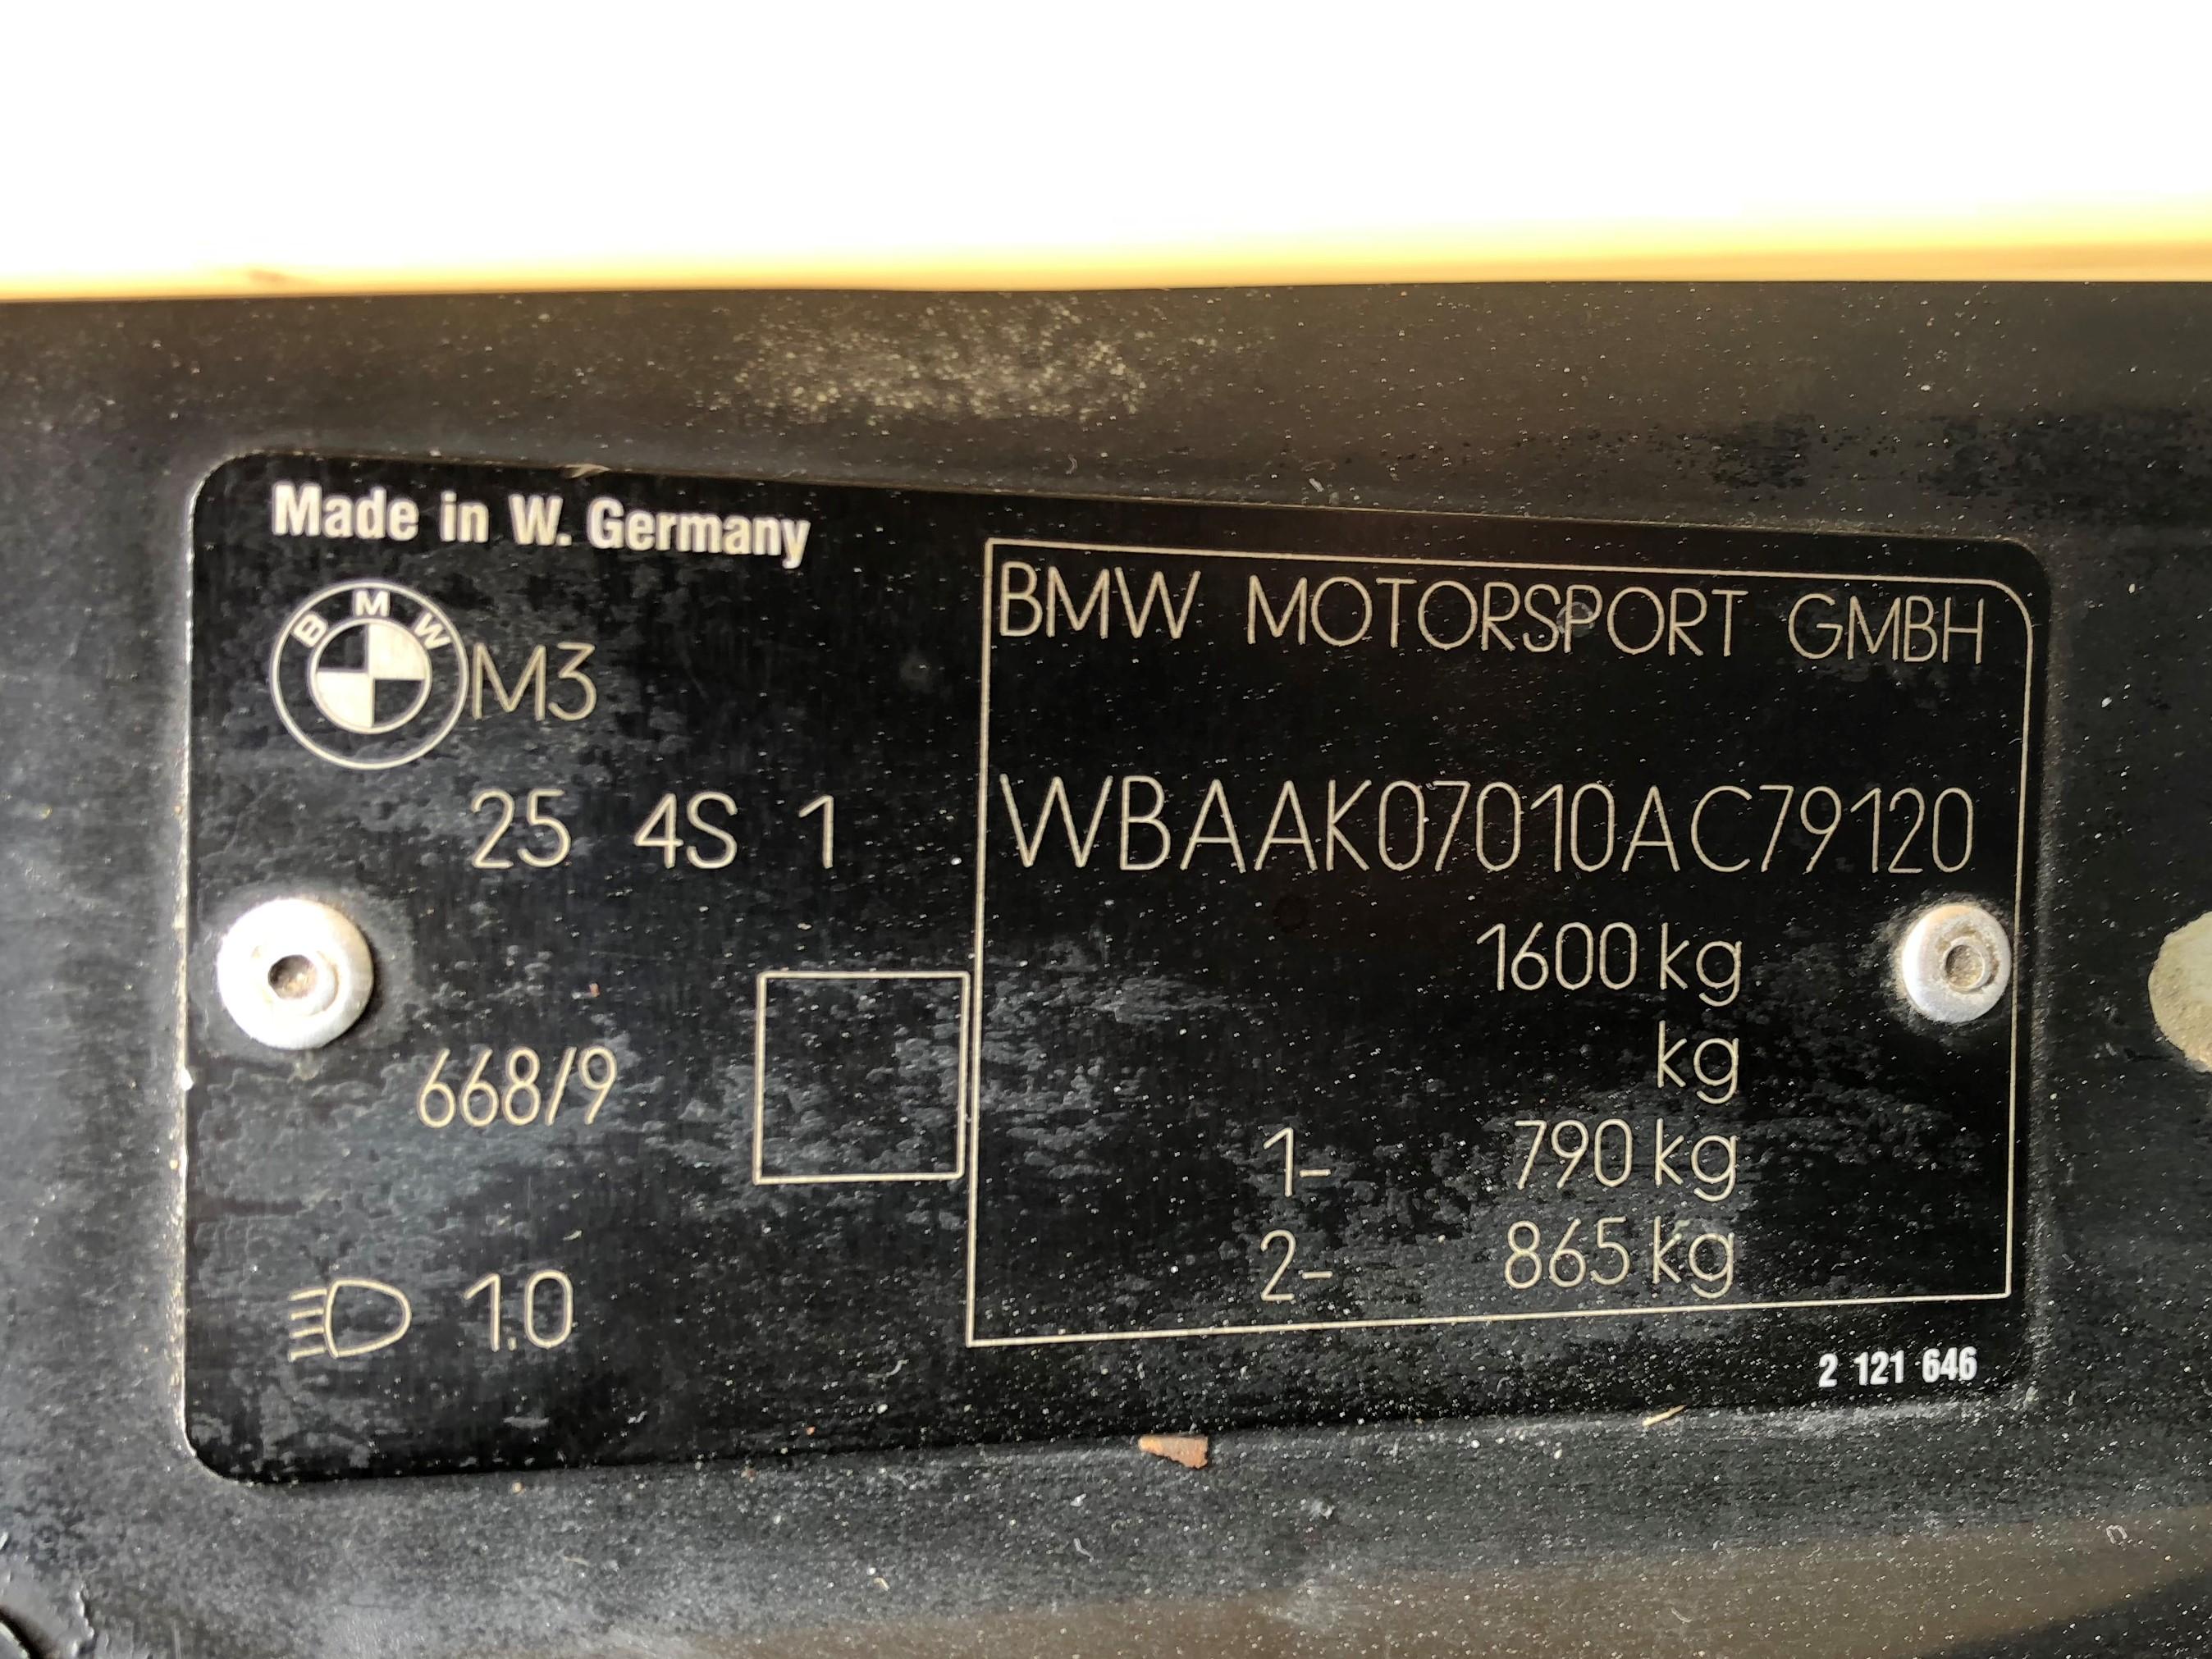 1991 BMW E30 M3 Sport Evolution